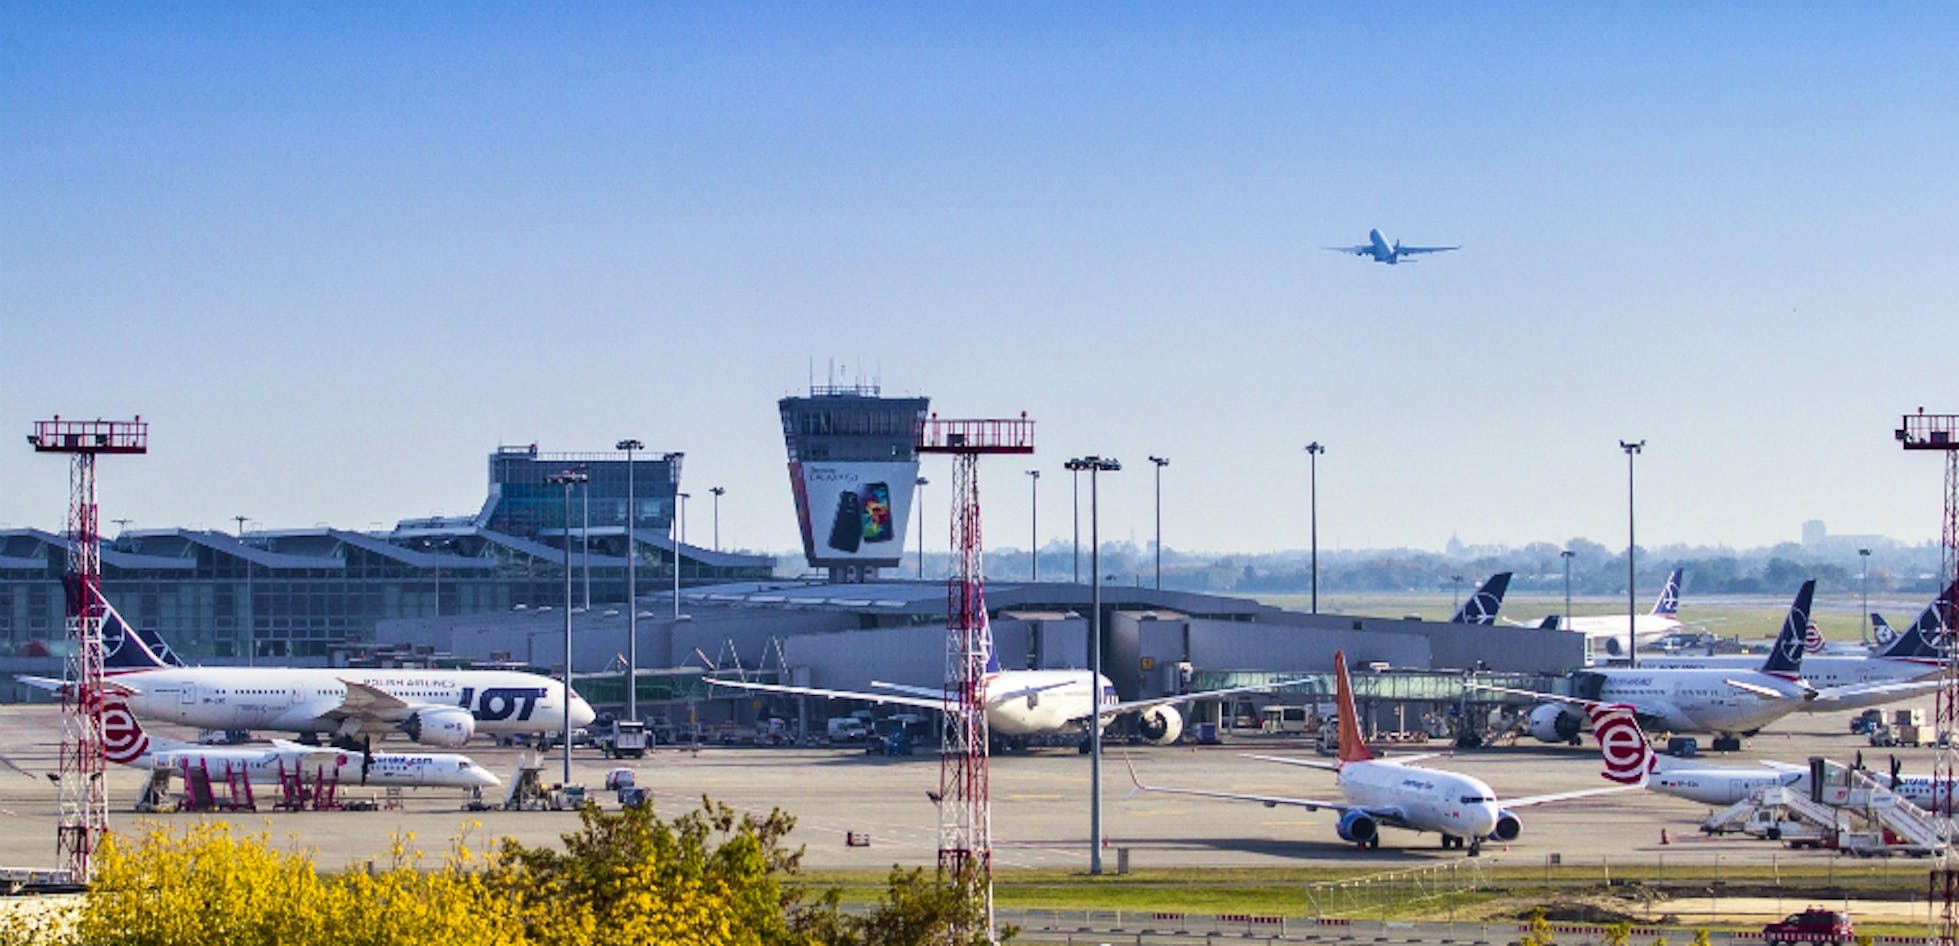 Solidarnosc Airport Polens neuer Großflughafen soll bis zu vier Pisten